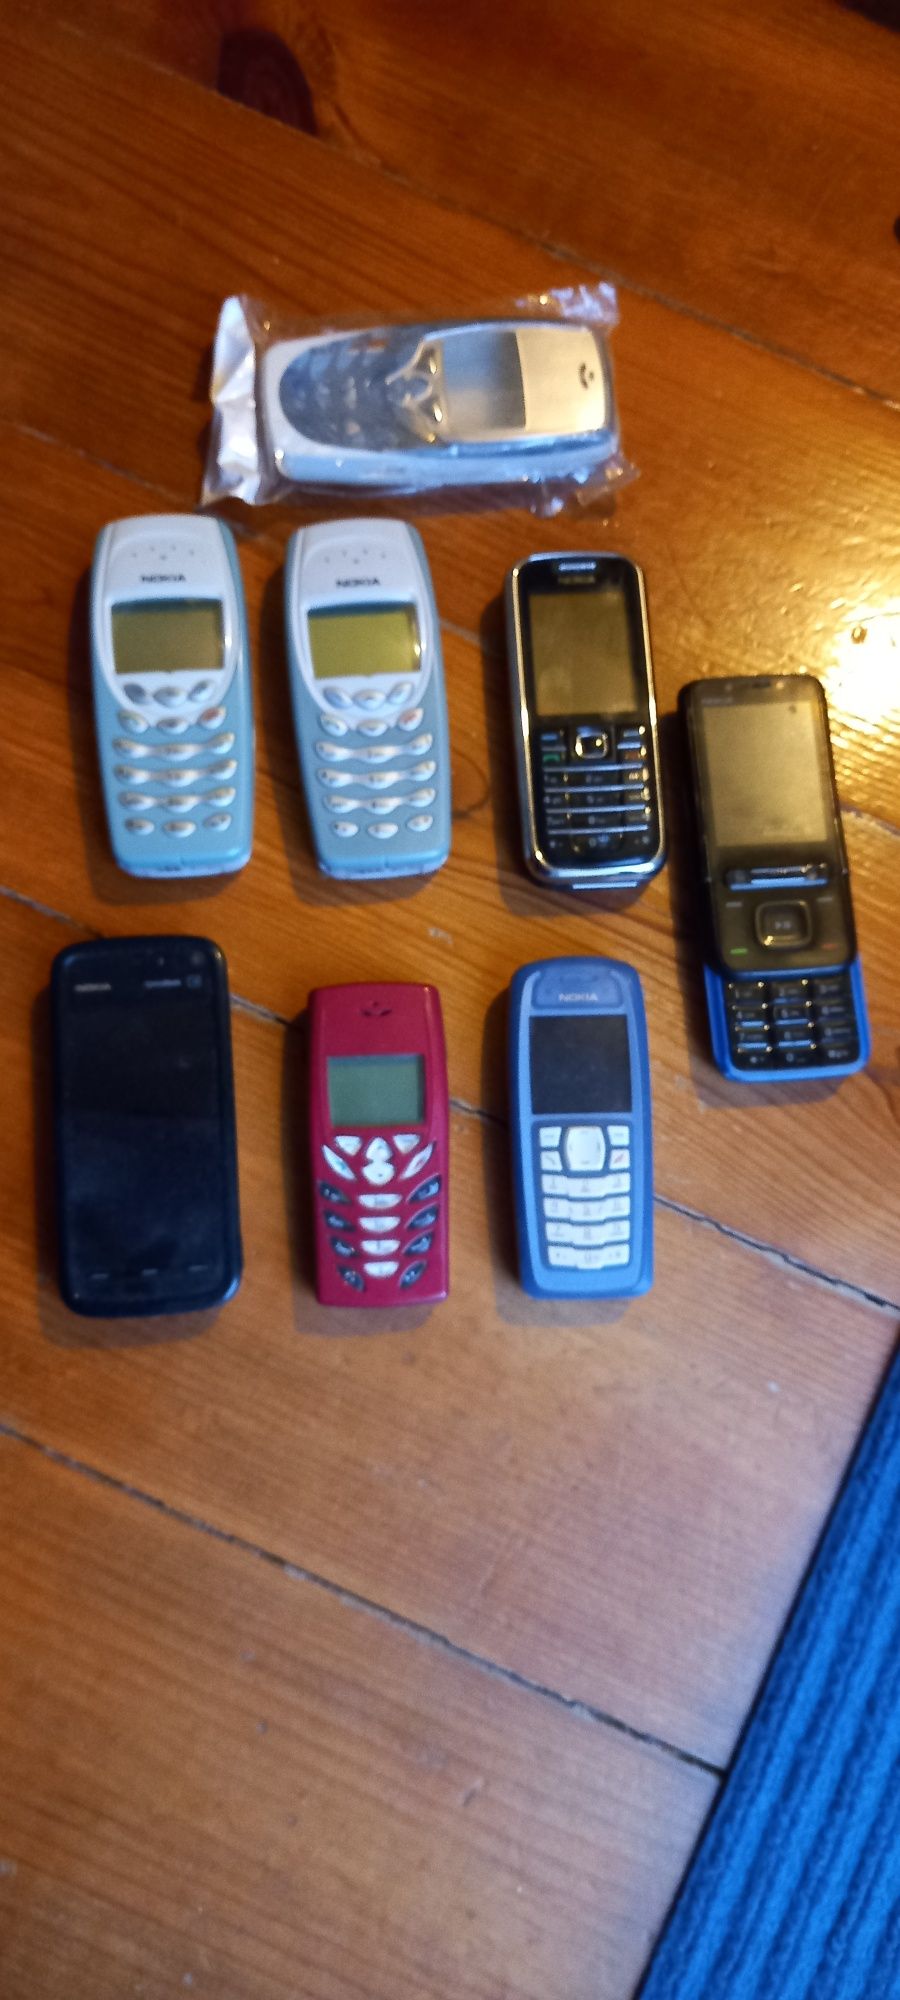 Nokia colecção vários modelos